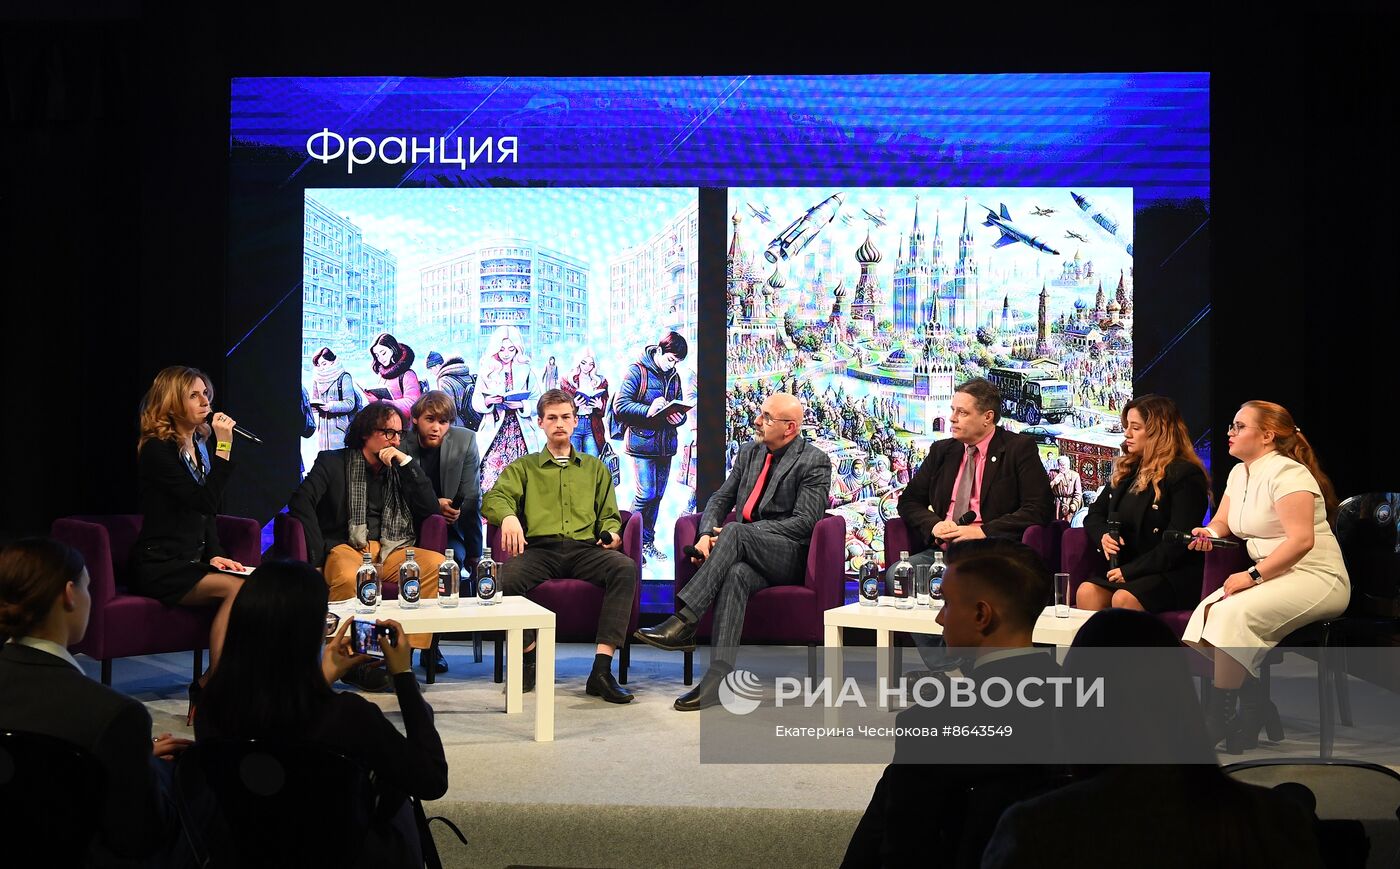 Всероссийский онлайн-марафон "Ночь выборов-2024. У России нет границ"